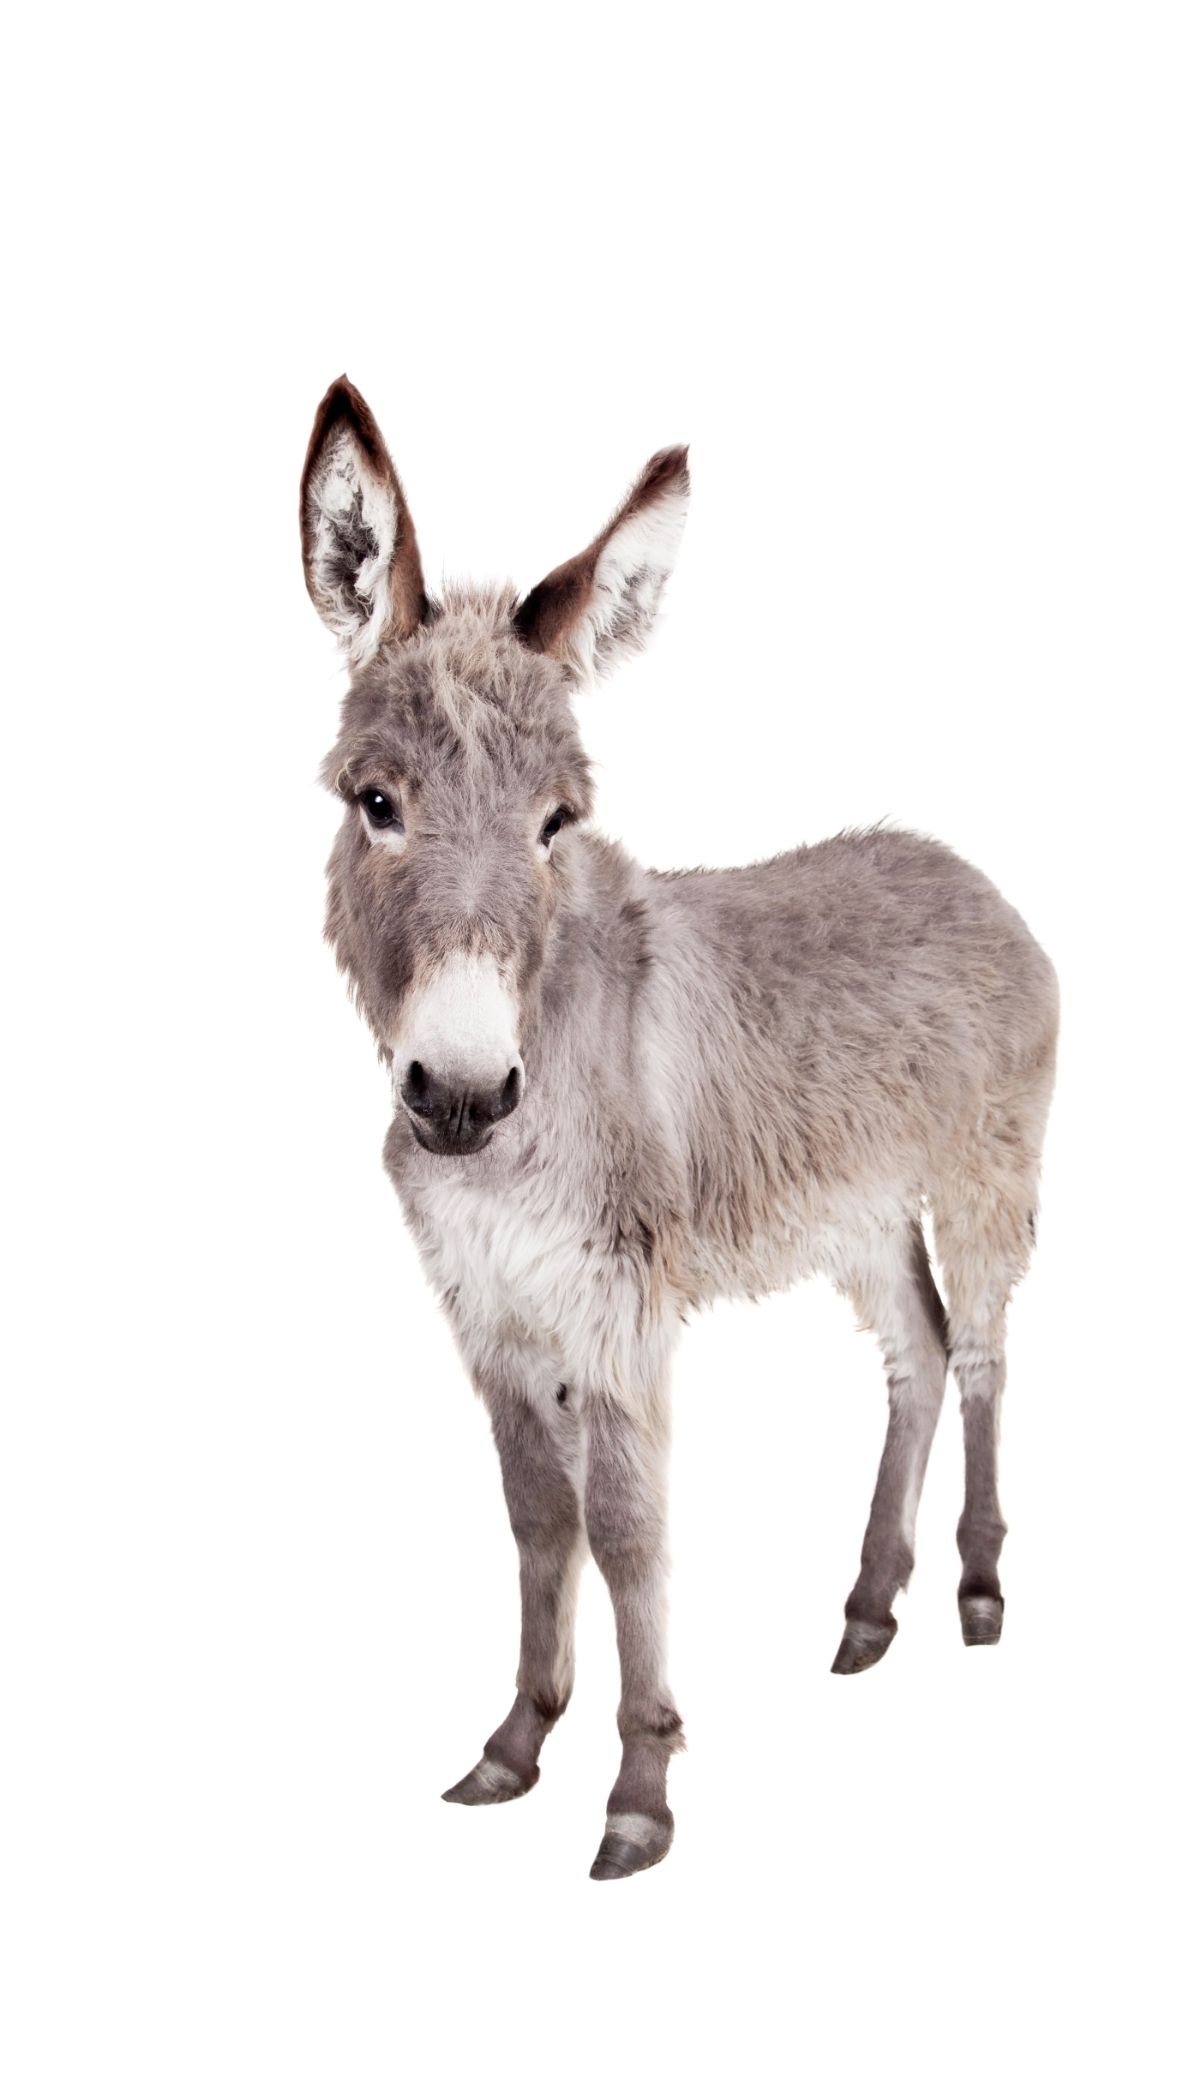 Donkey on white background